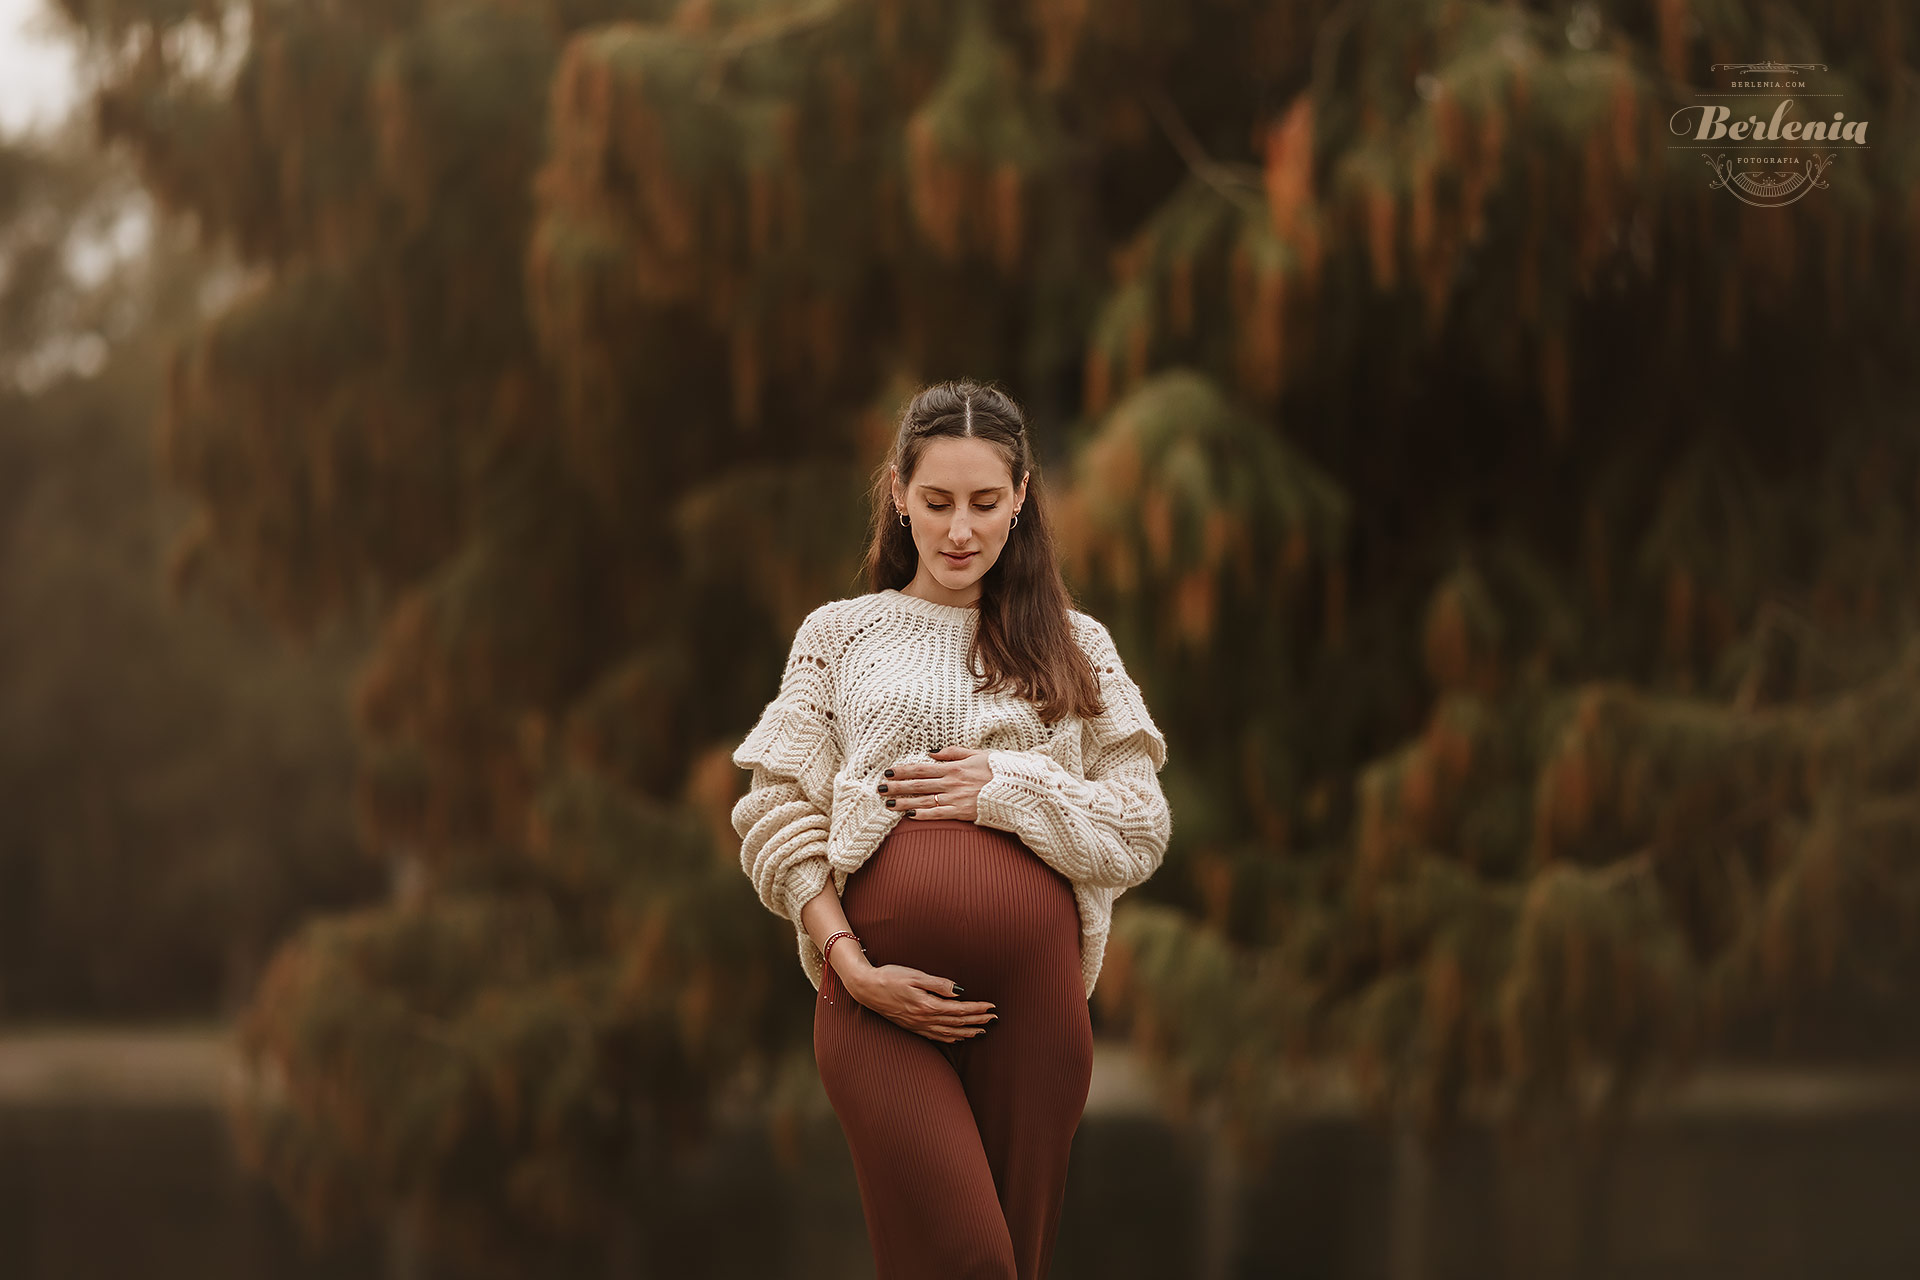 Fotografía de embarazo en invierno - Sesión de fotos embarazada en exterior - Palermo, CABA, Buenos Aires, Argentina - Berlenia Fotografía - 16